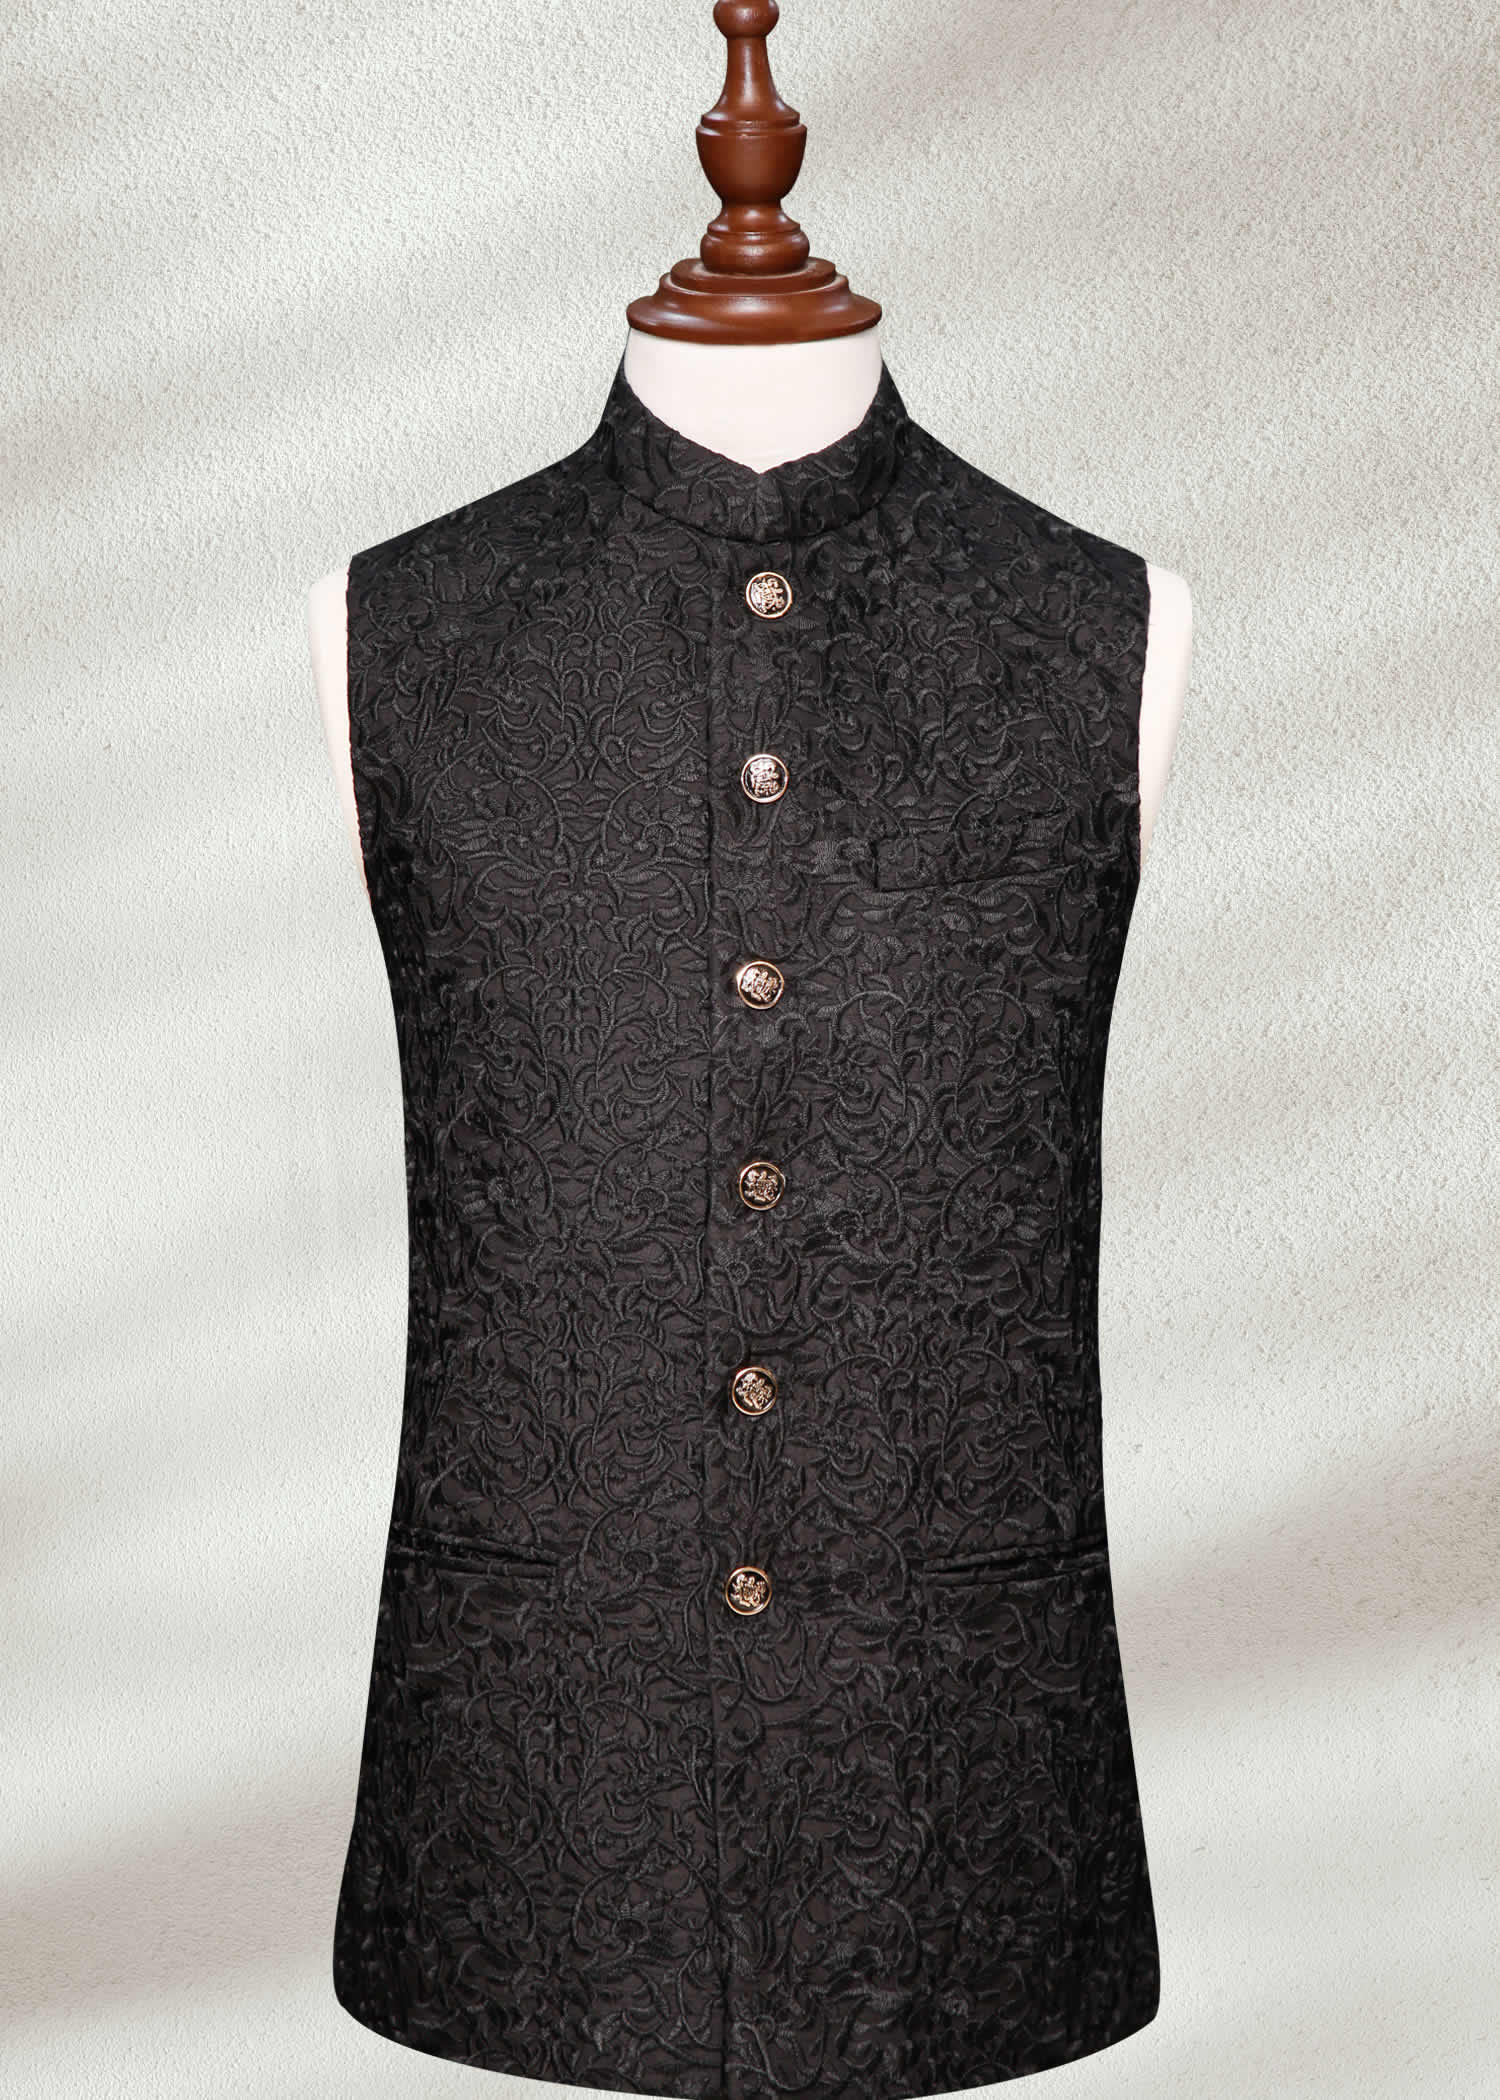 Luxury Black Waistcoat Black Resham Embroidered Sherwani